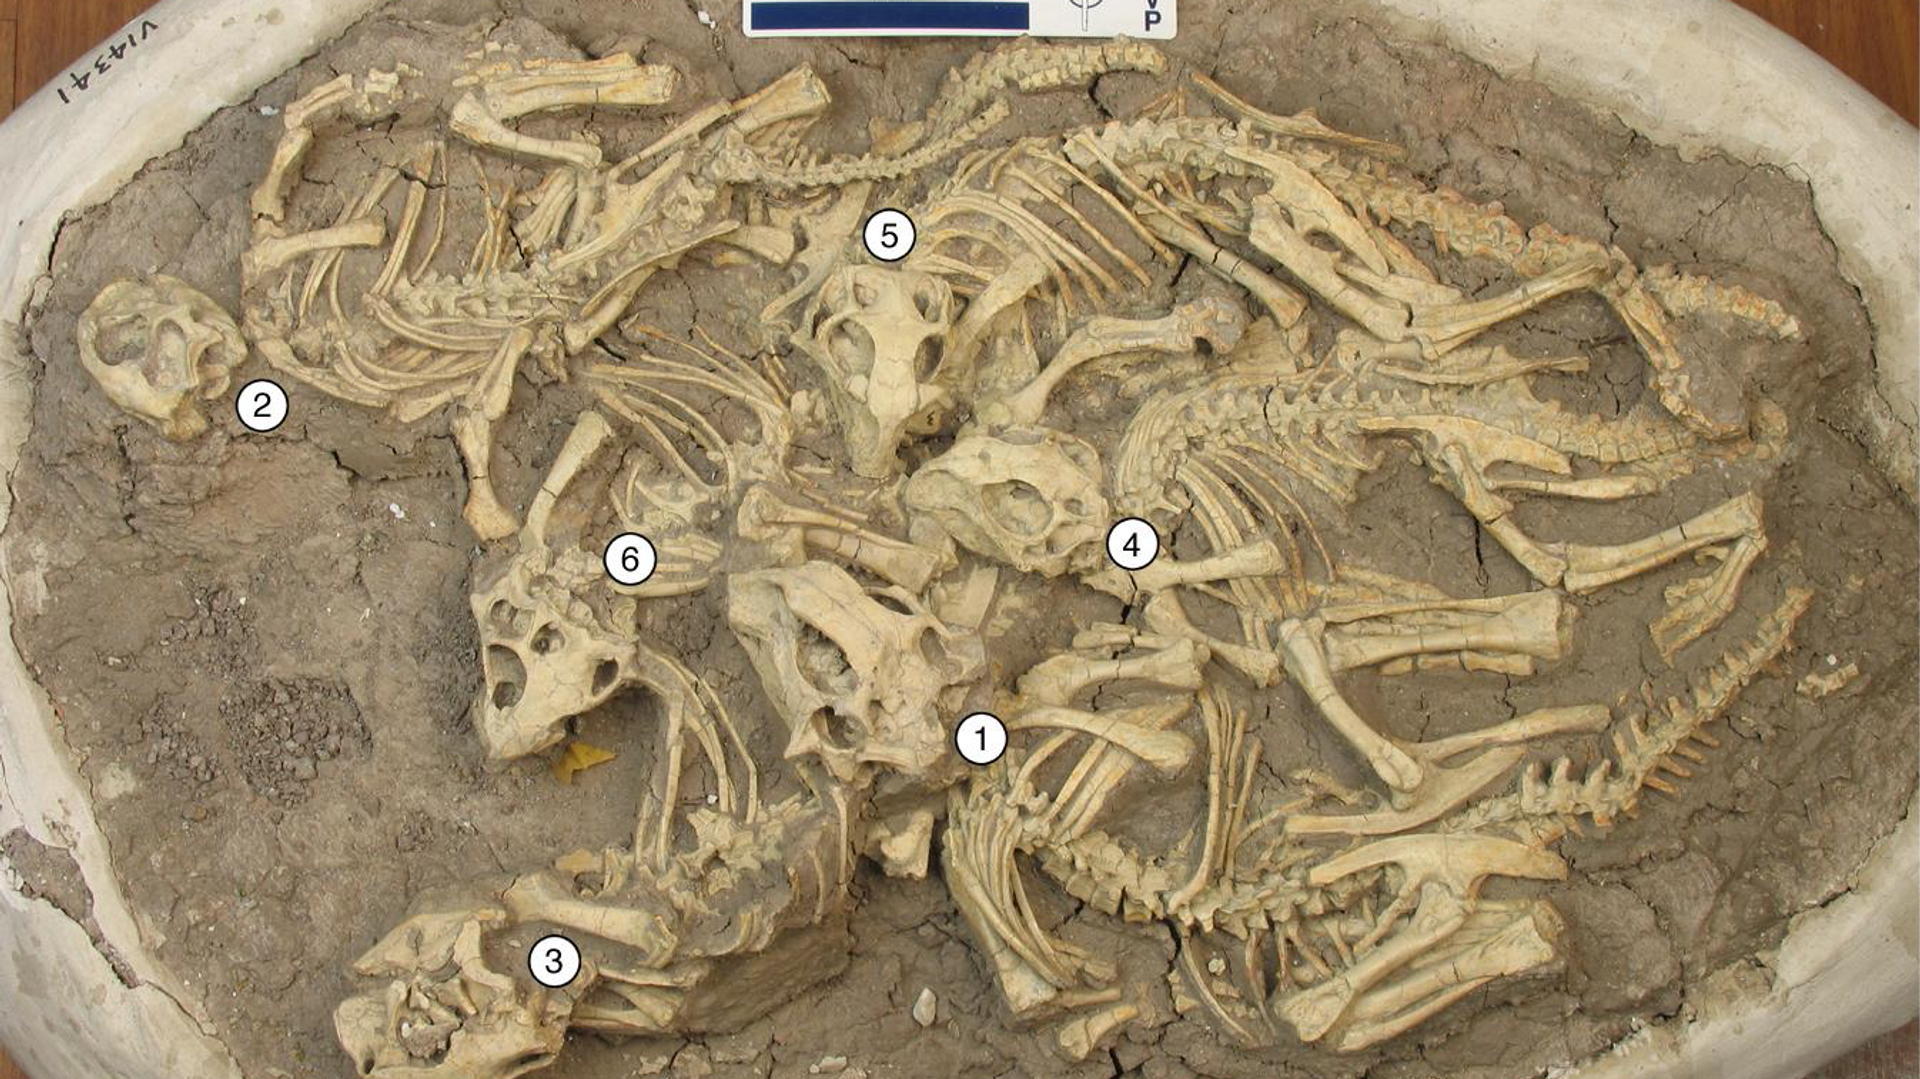 Останки шести детенышей пситтакозавров, обнаруженные в отложениях мелового периода в Китае - РИА Новости, 1920, 20.01.2021